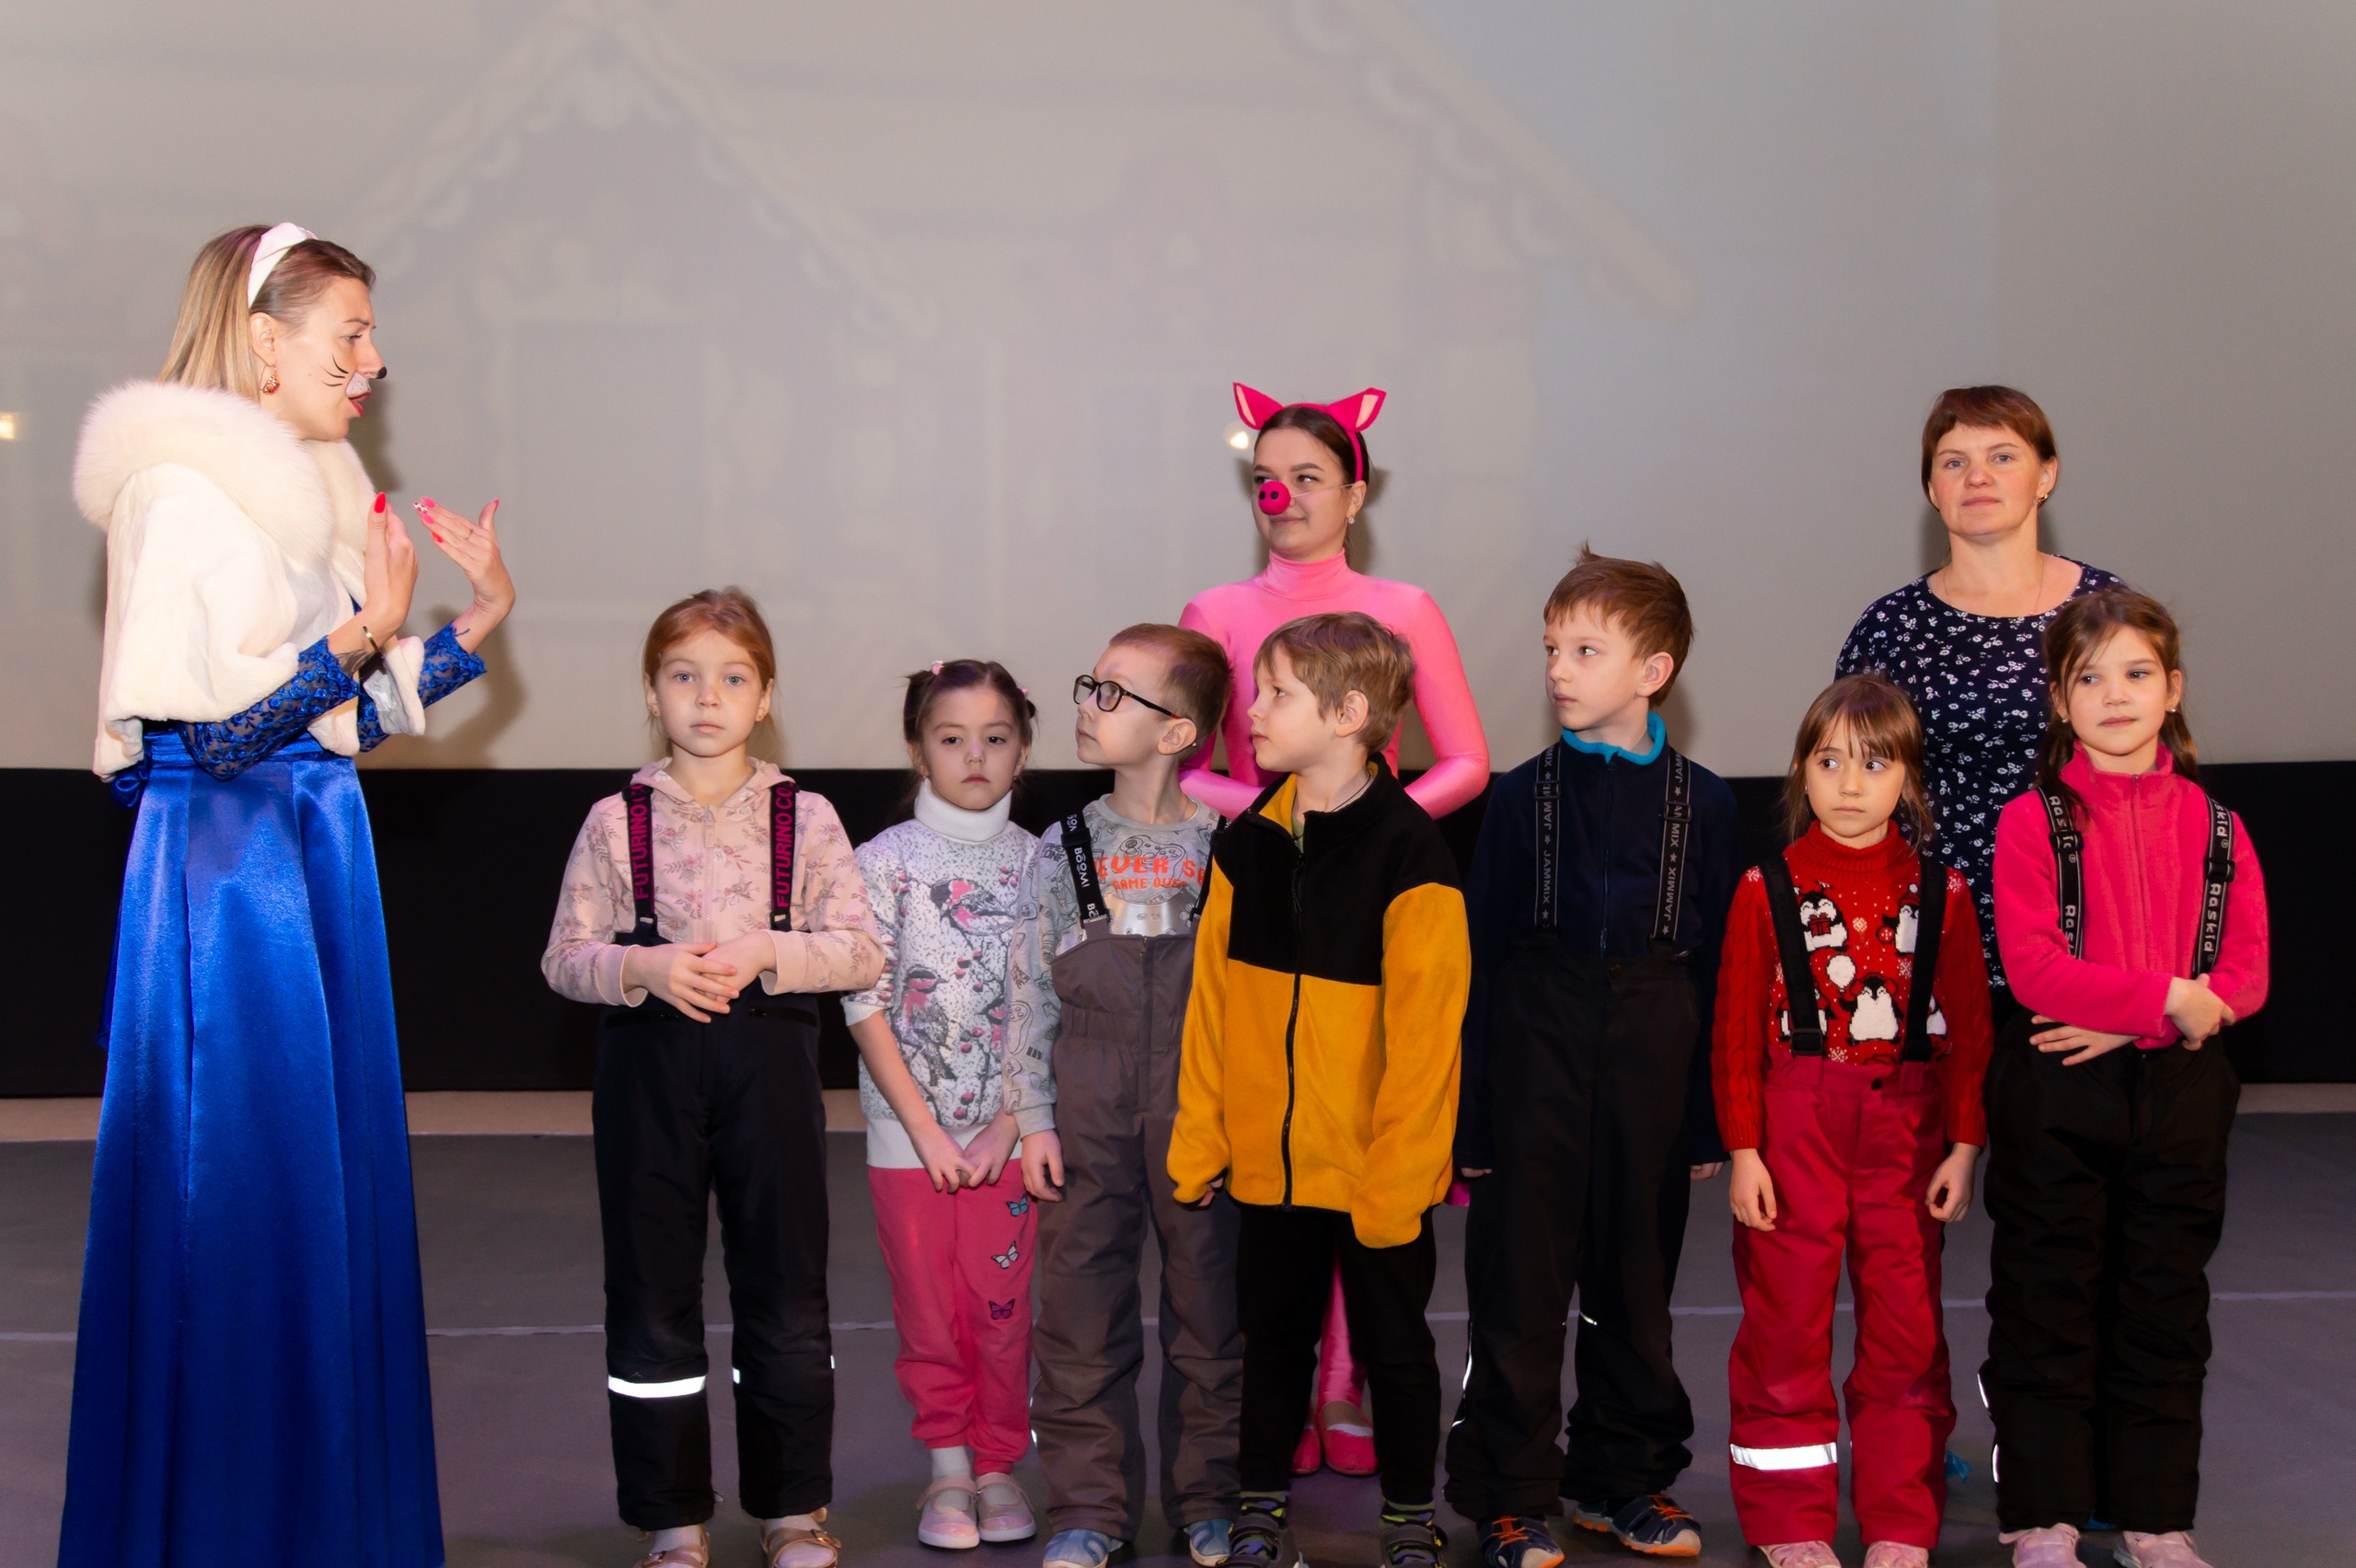 13 февраля в КДЦ «Подвиг» состоялась интерактивная программа «В гостях у сказки» для воспитанников детских садов №42 и №29 Колпинского района.